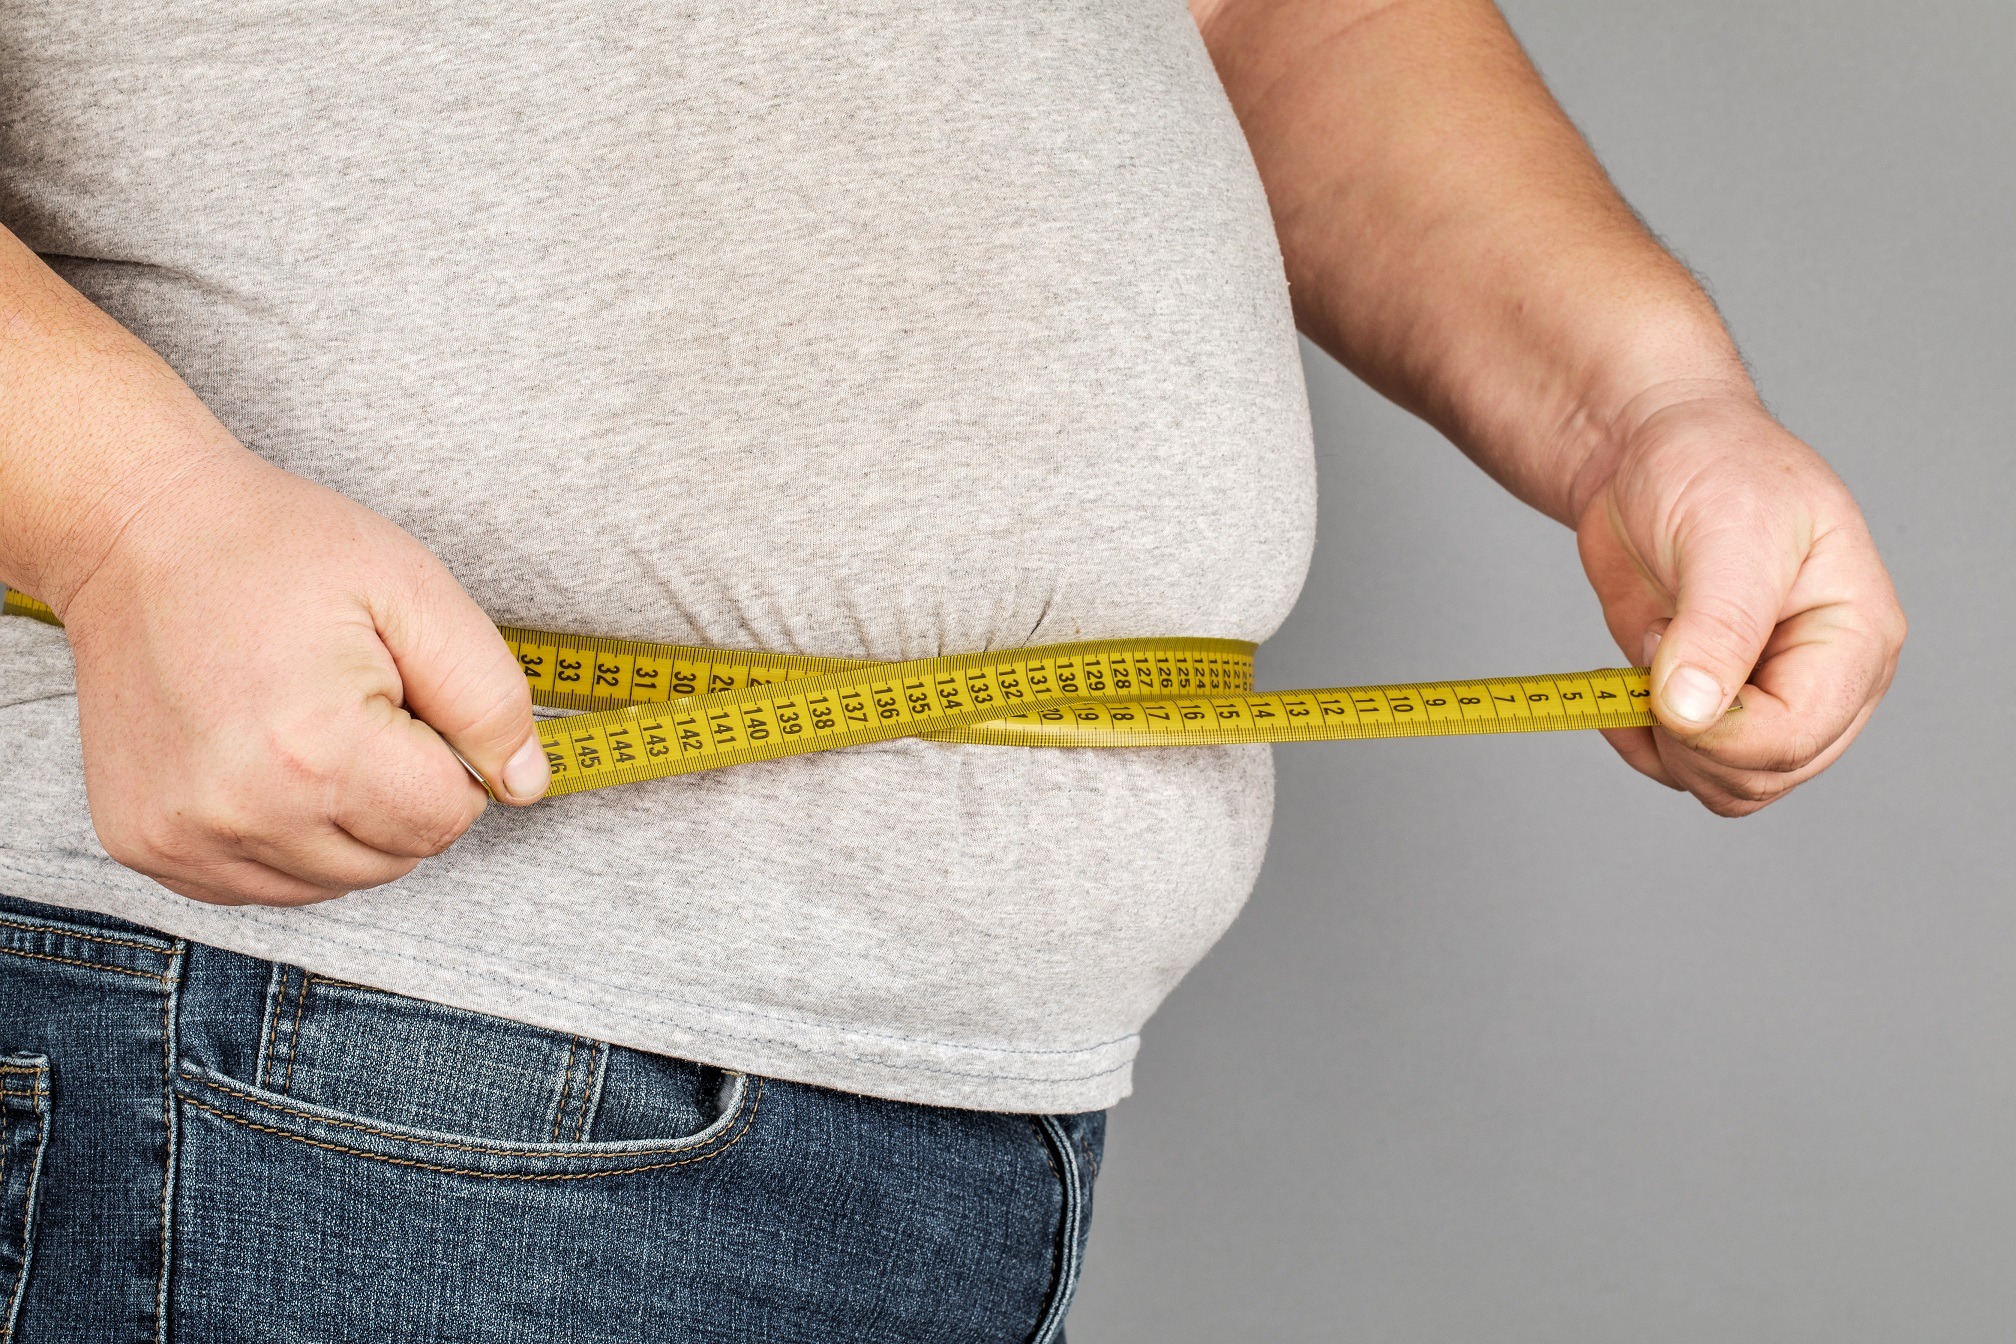 Obezitatea, declarată cel mai important factor de risc în dezvoltarea diabetului de tip 2